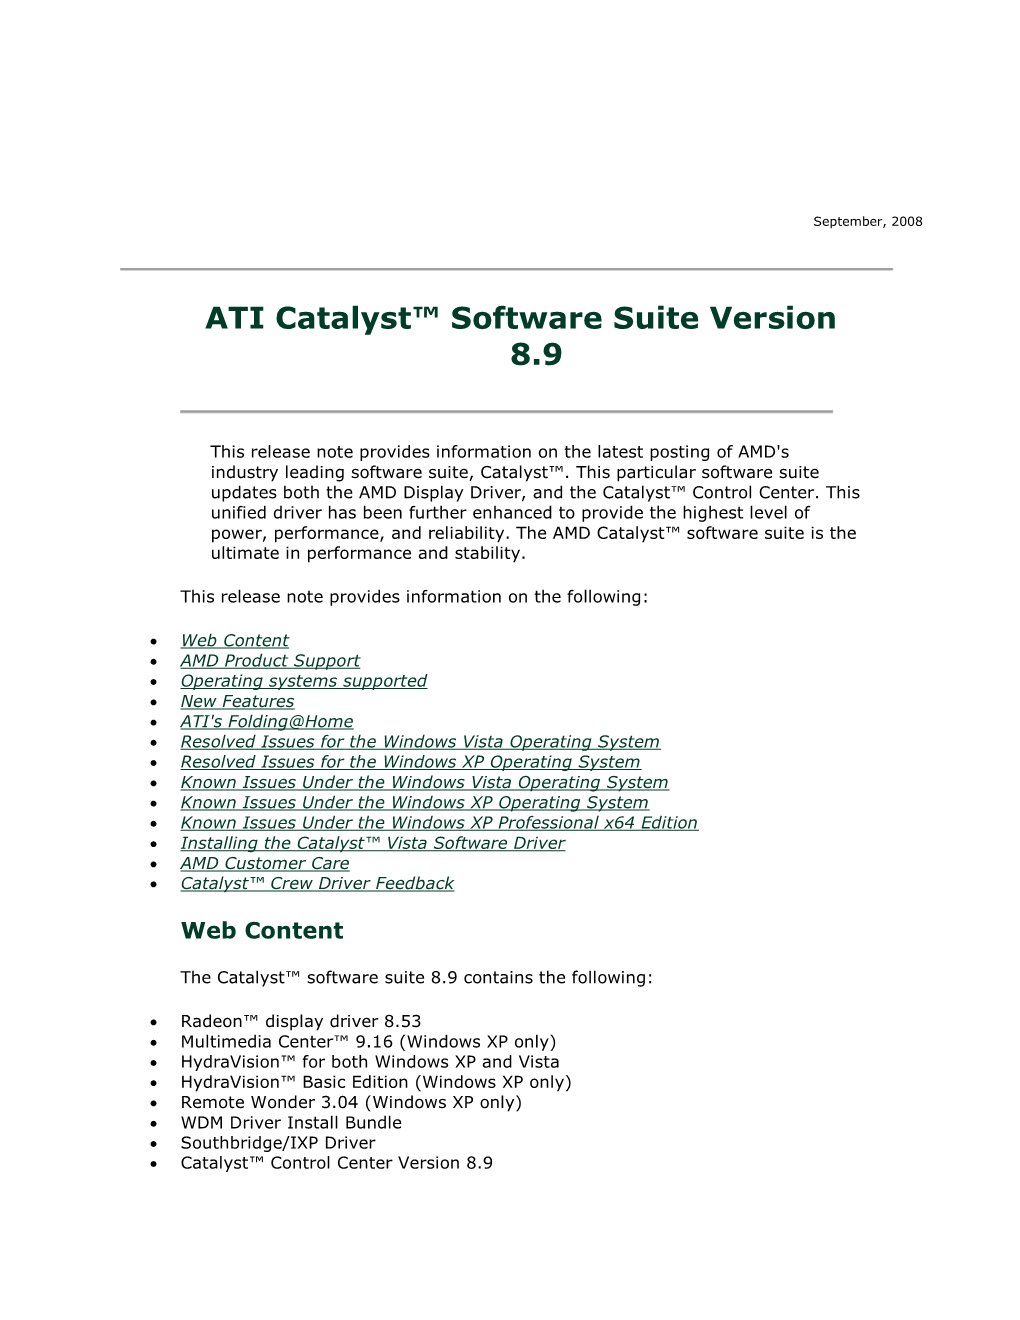 ATI Catalyst™ Software Suite Version 8.9